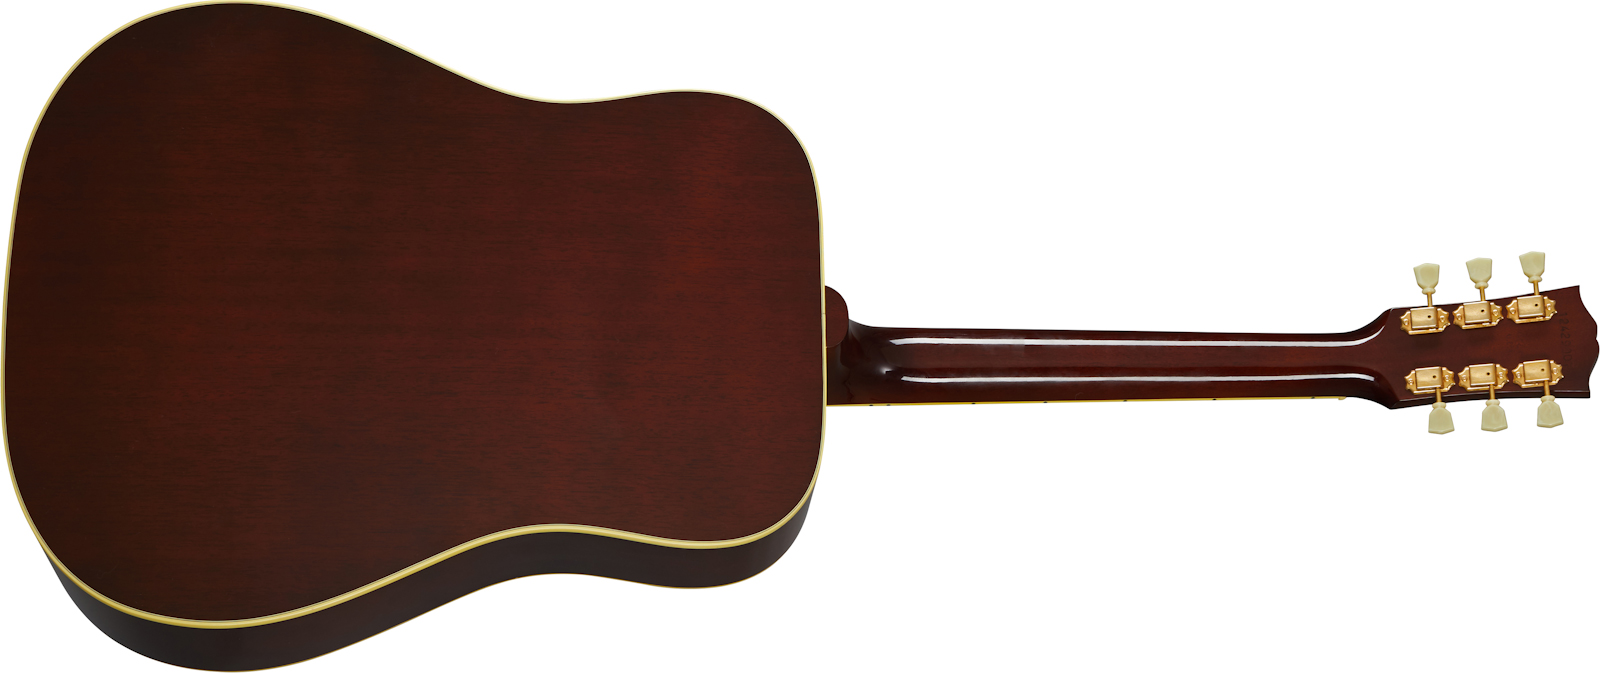 Gibson Hummingbird Original 2020 Dreadnought Epicea Acajou Rw - Antique Natural - Guitarra electro acustica - Variation 1